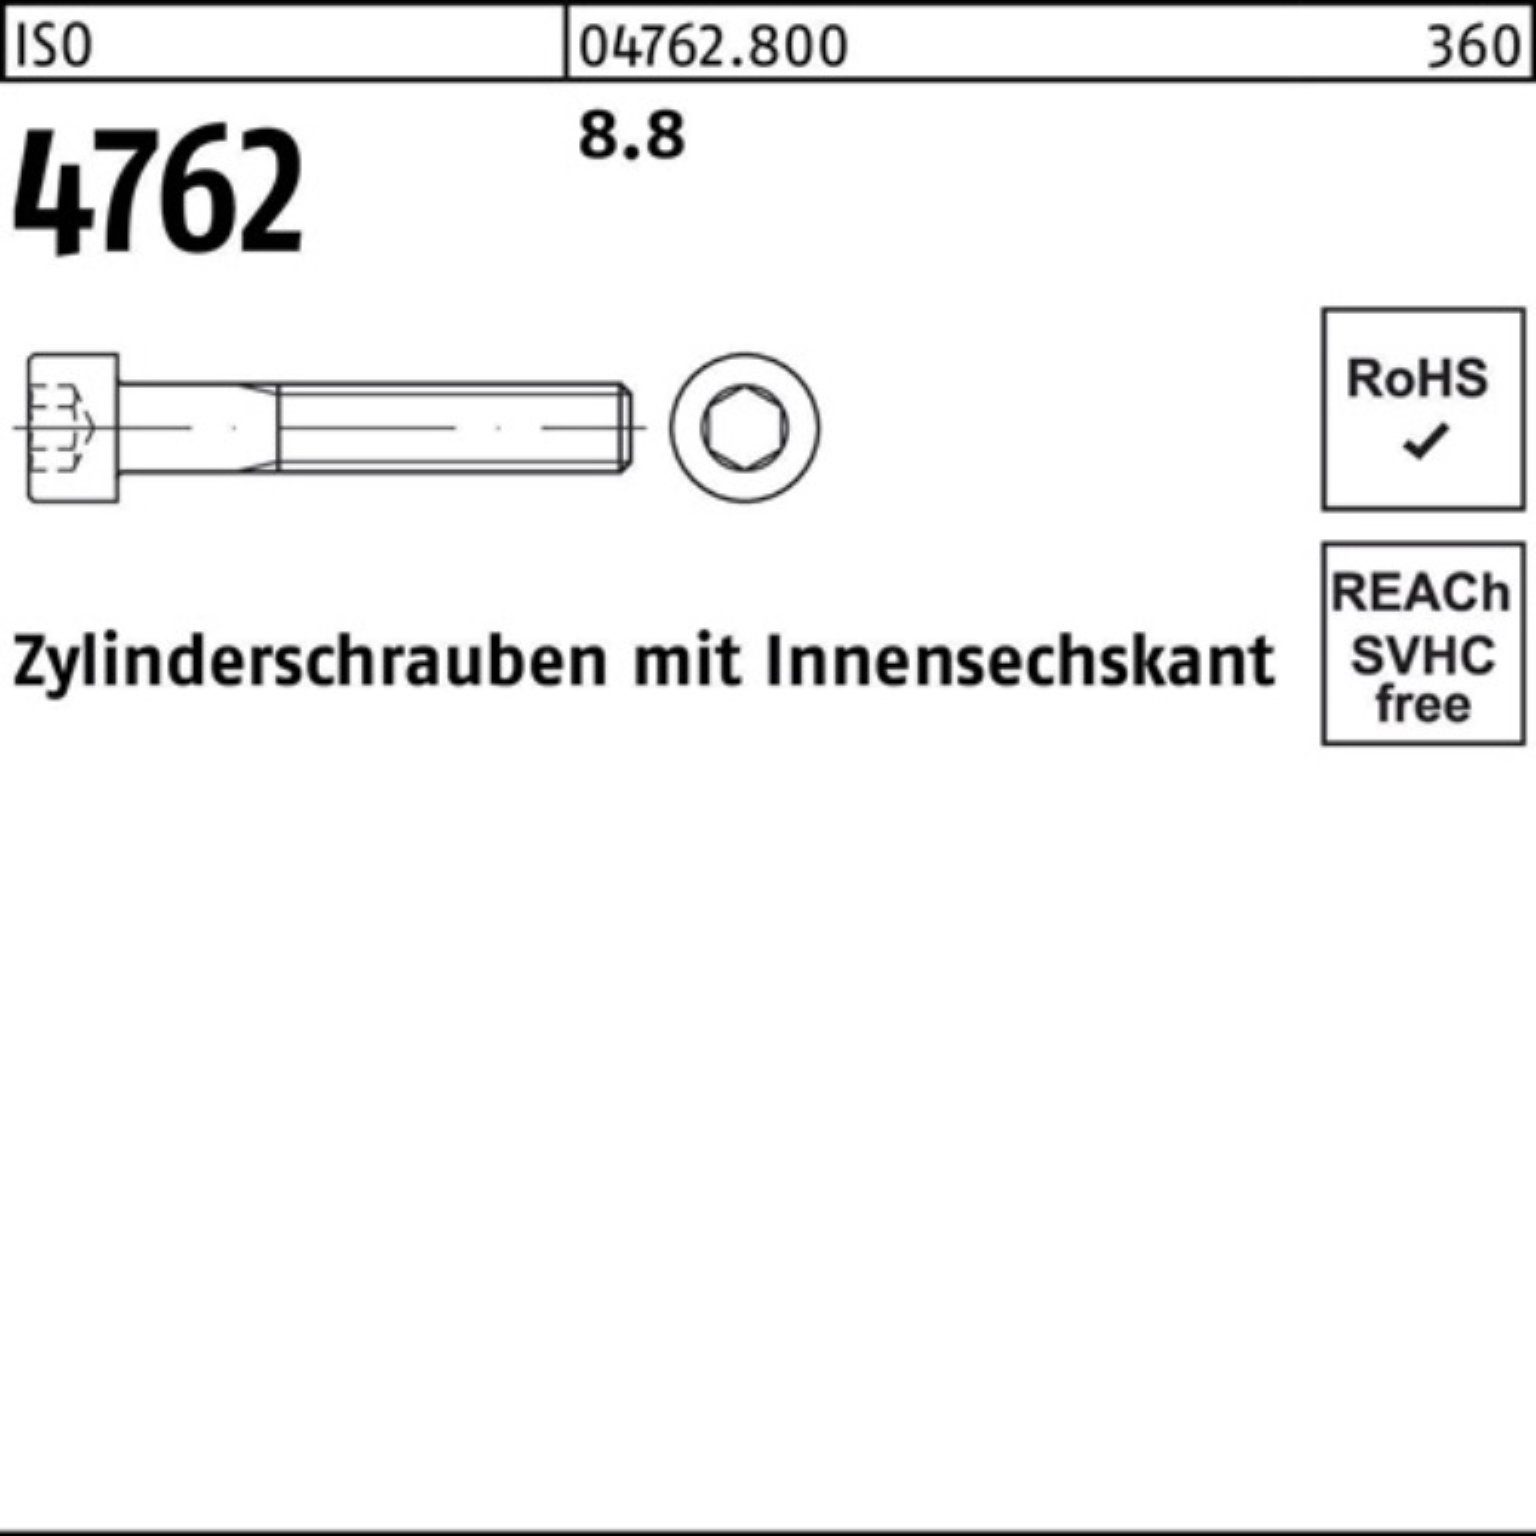 Pack ISO IS Zylinderschraube Innen-6kt 1 M42x Stück 100er 8.8 Reyher 4762 Zylinderschraube 80